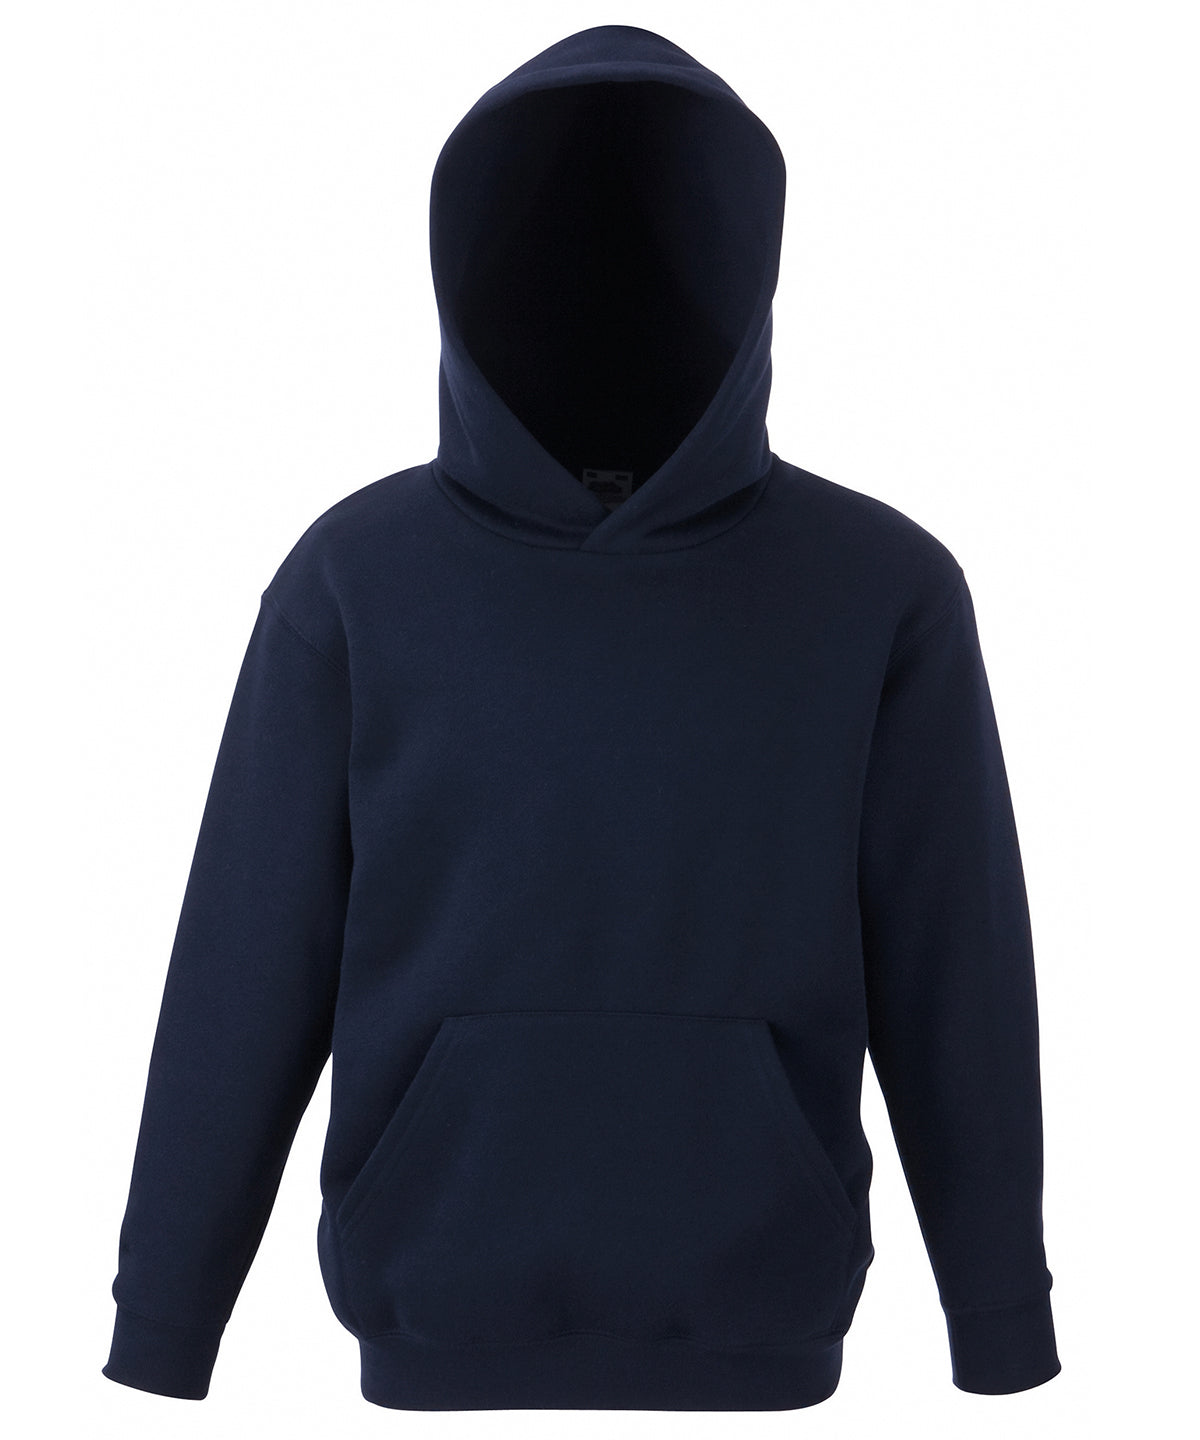 Personalised Hoodies - Mid Blue Fruit of the Loom Kids classic hooded sweatshirt